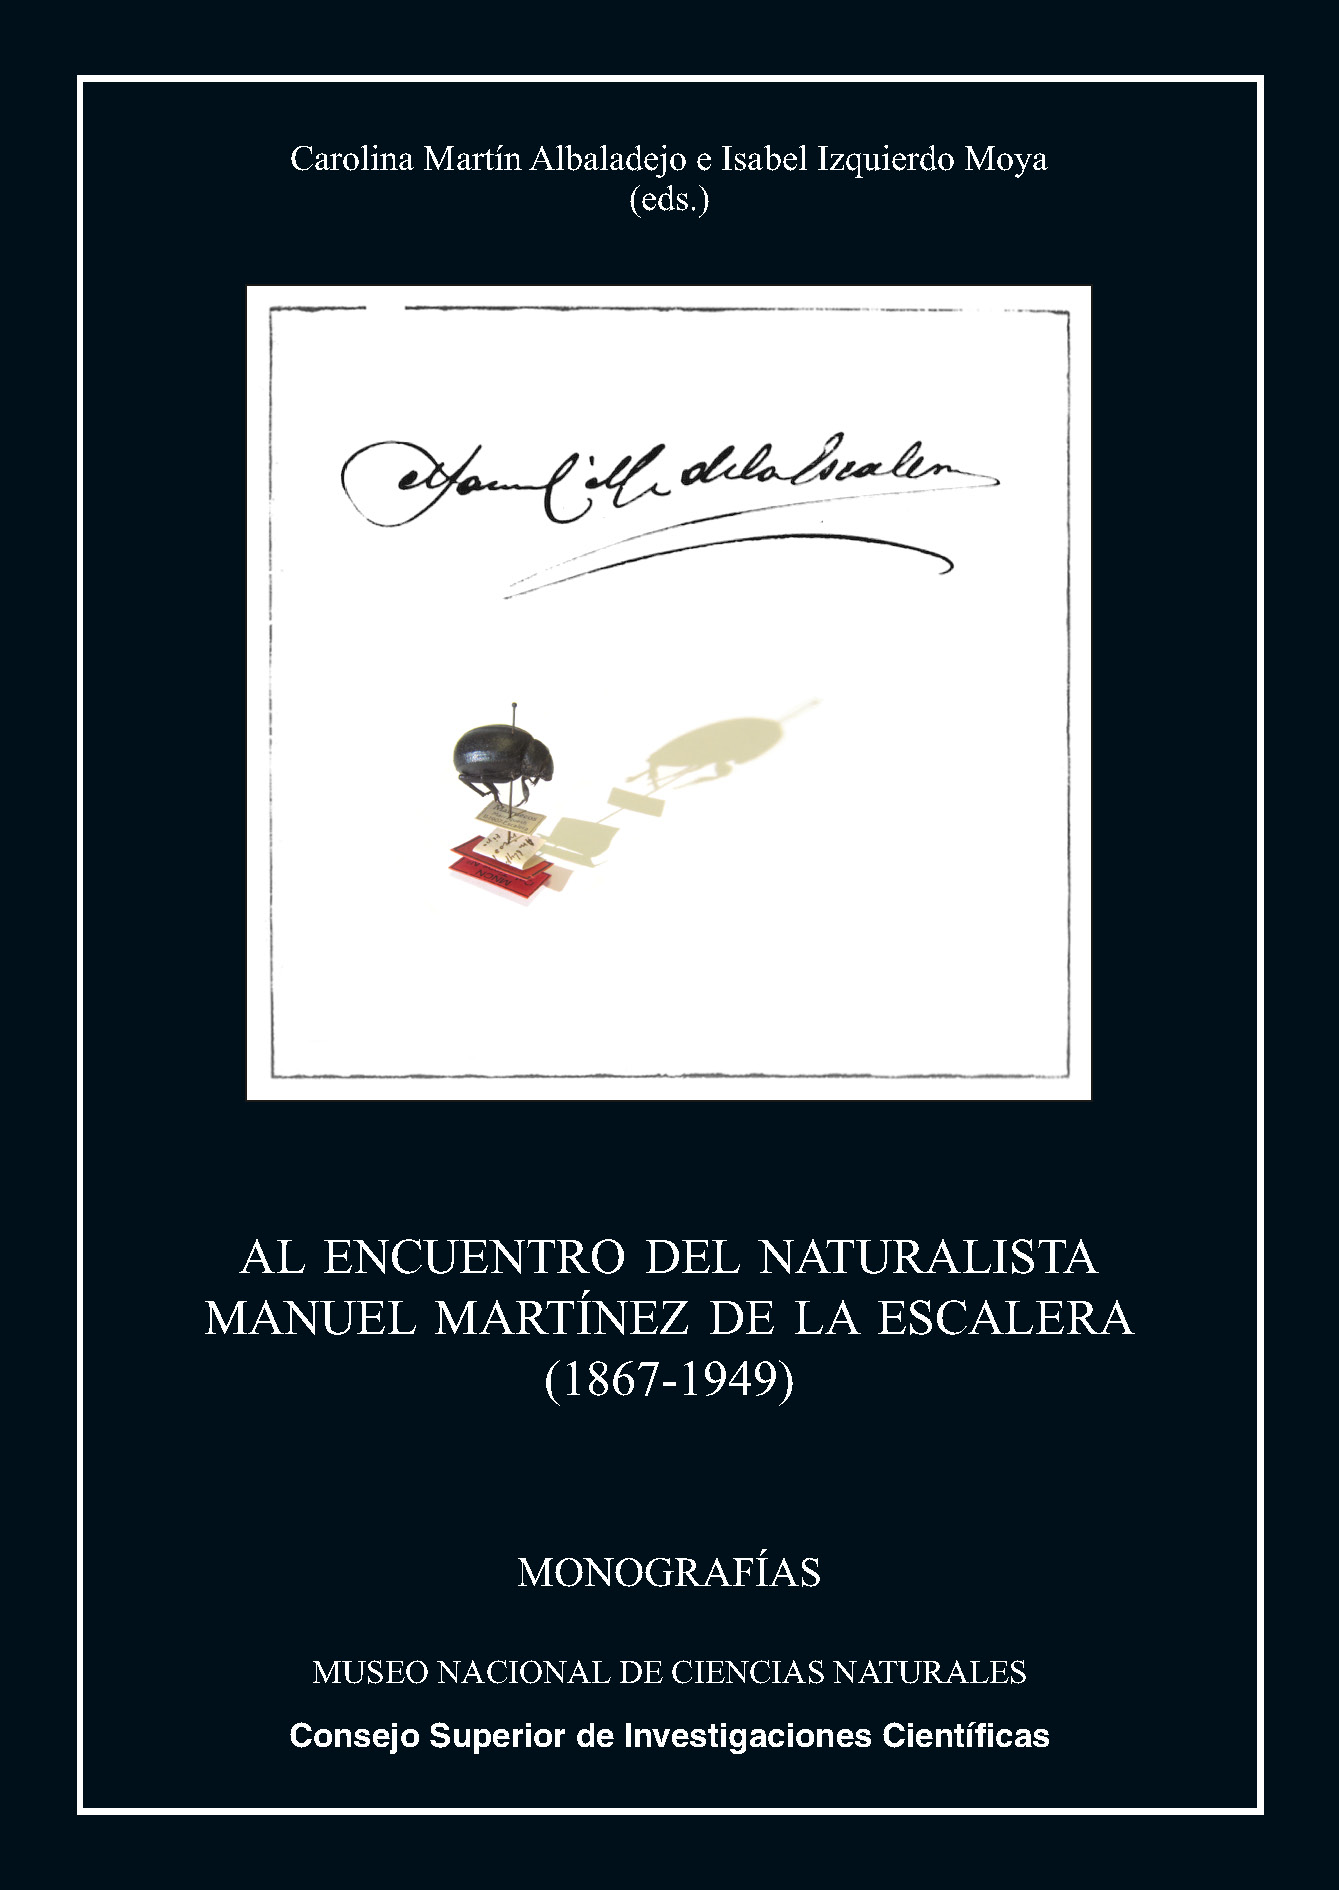 Al encuentro del naturalista Manuel Martínez de la Escalera (1867-1949)